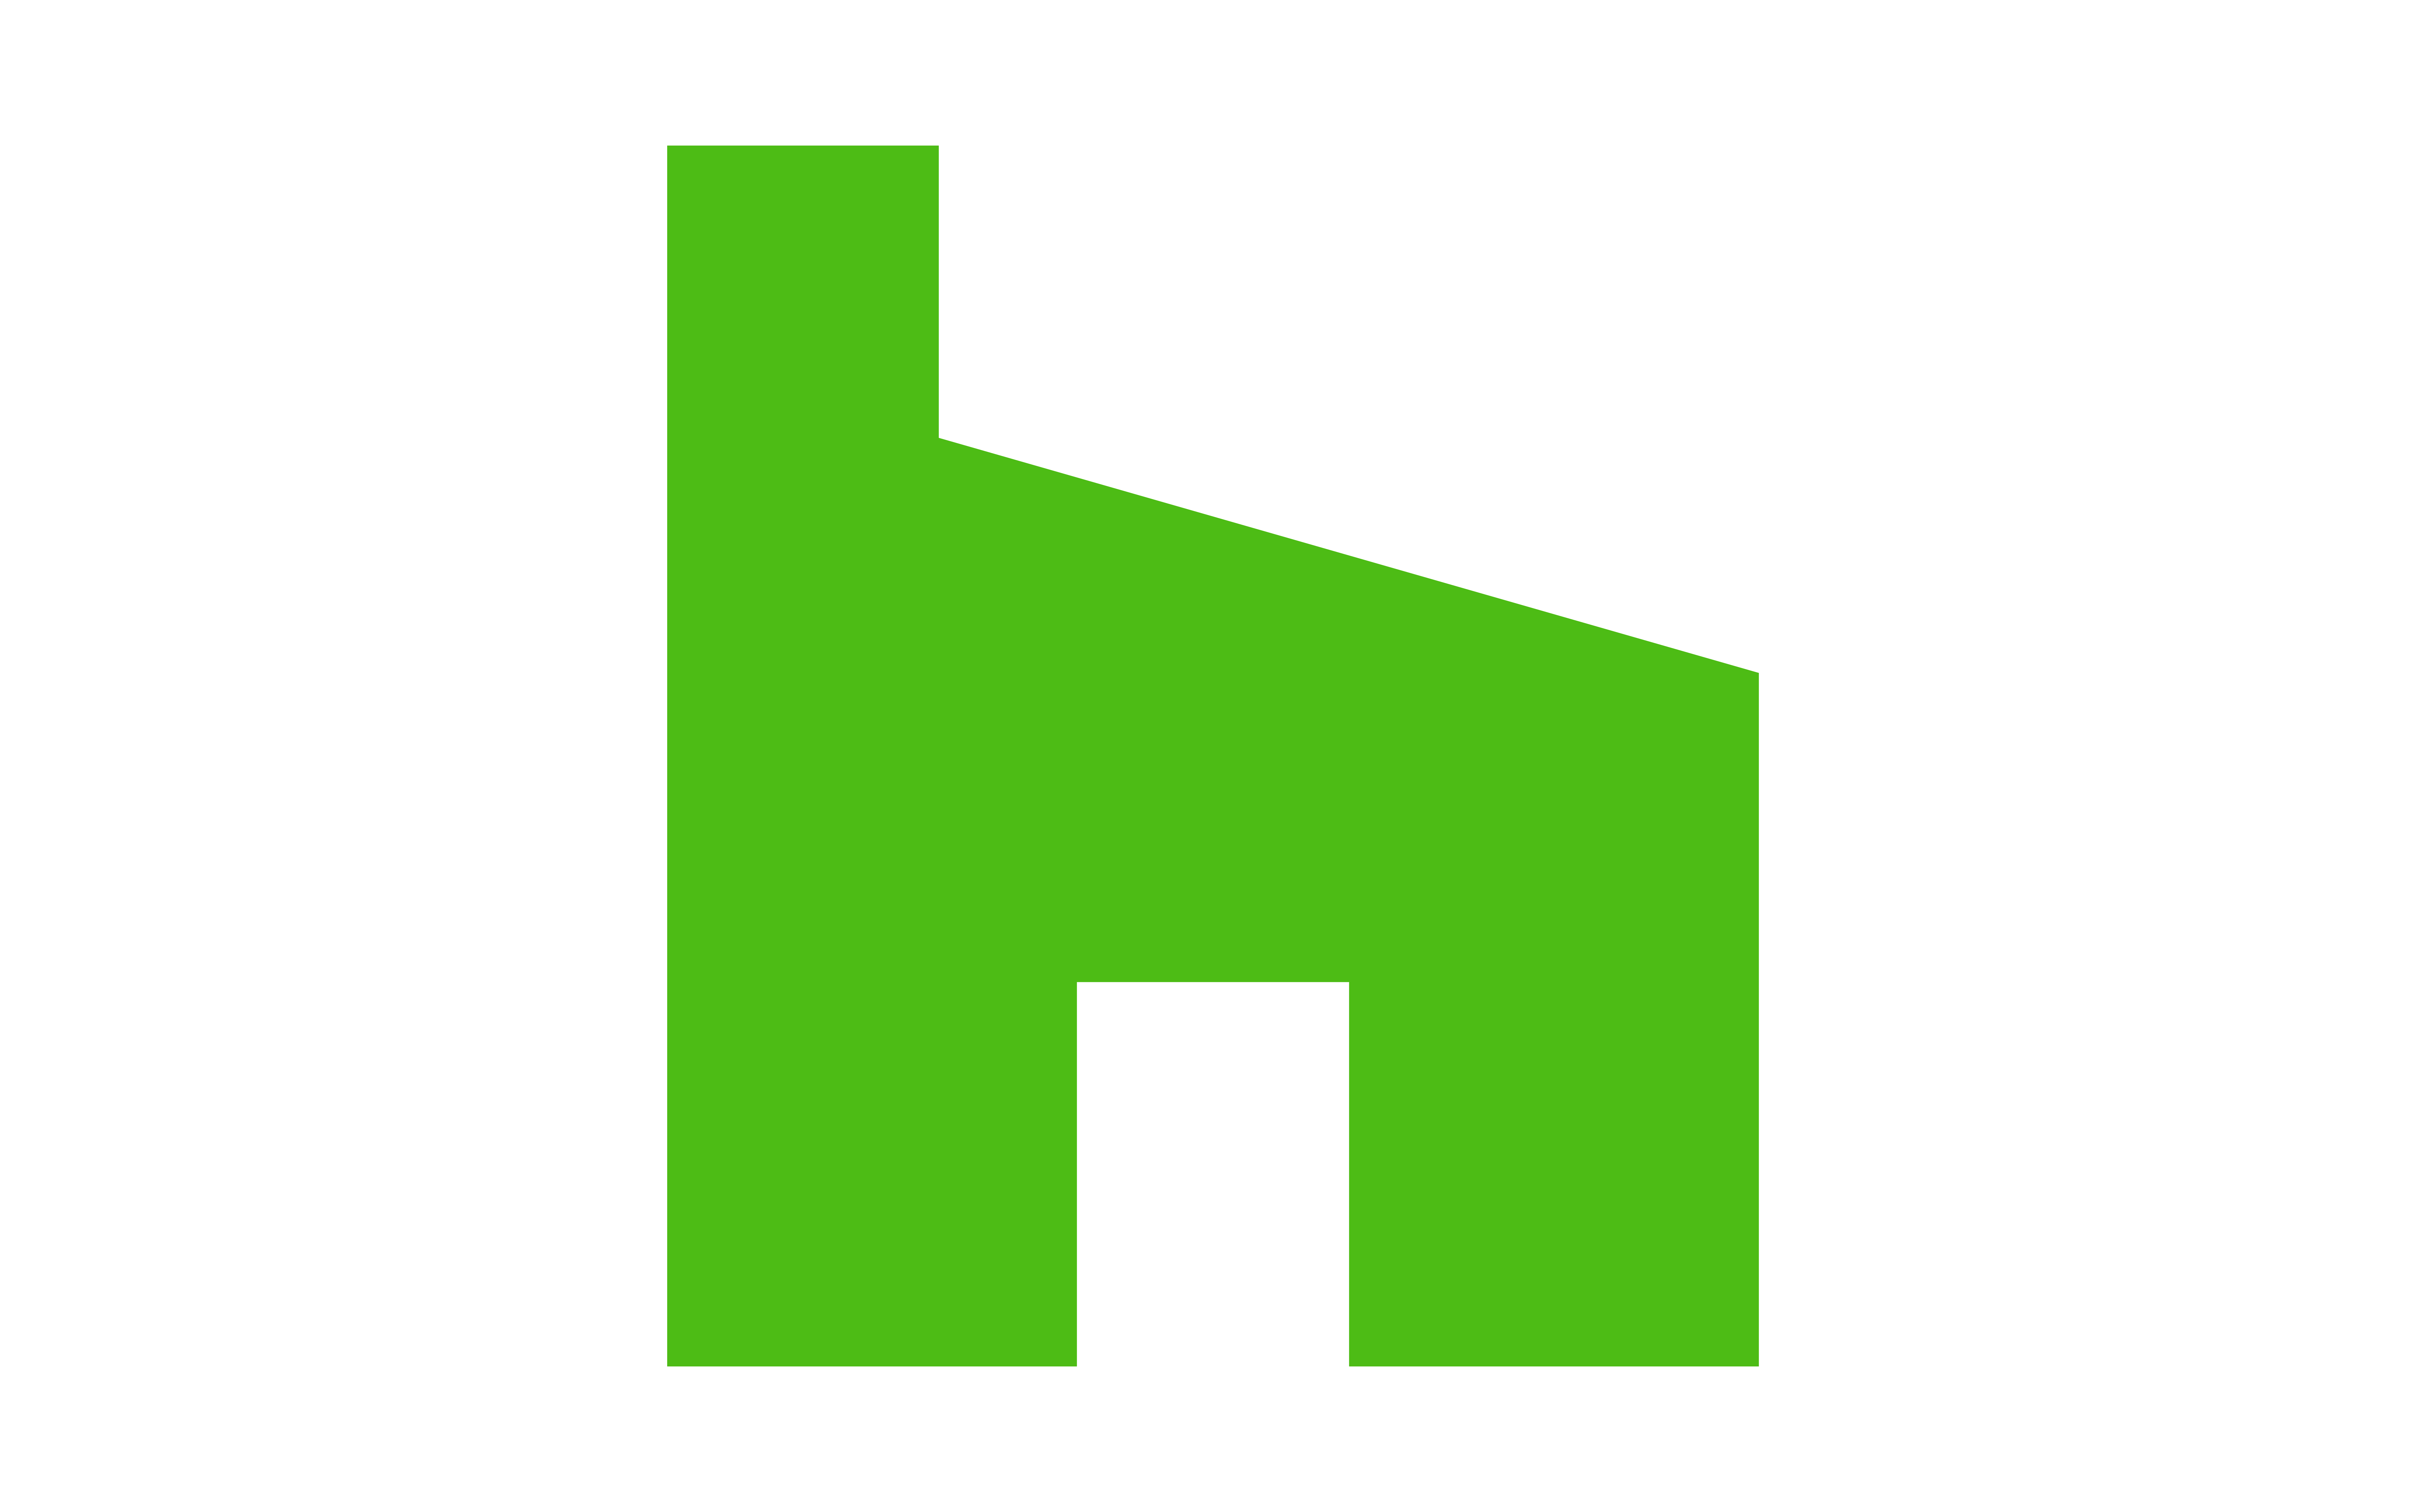 use of houzz logo